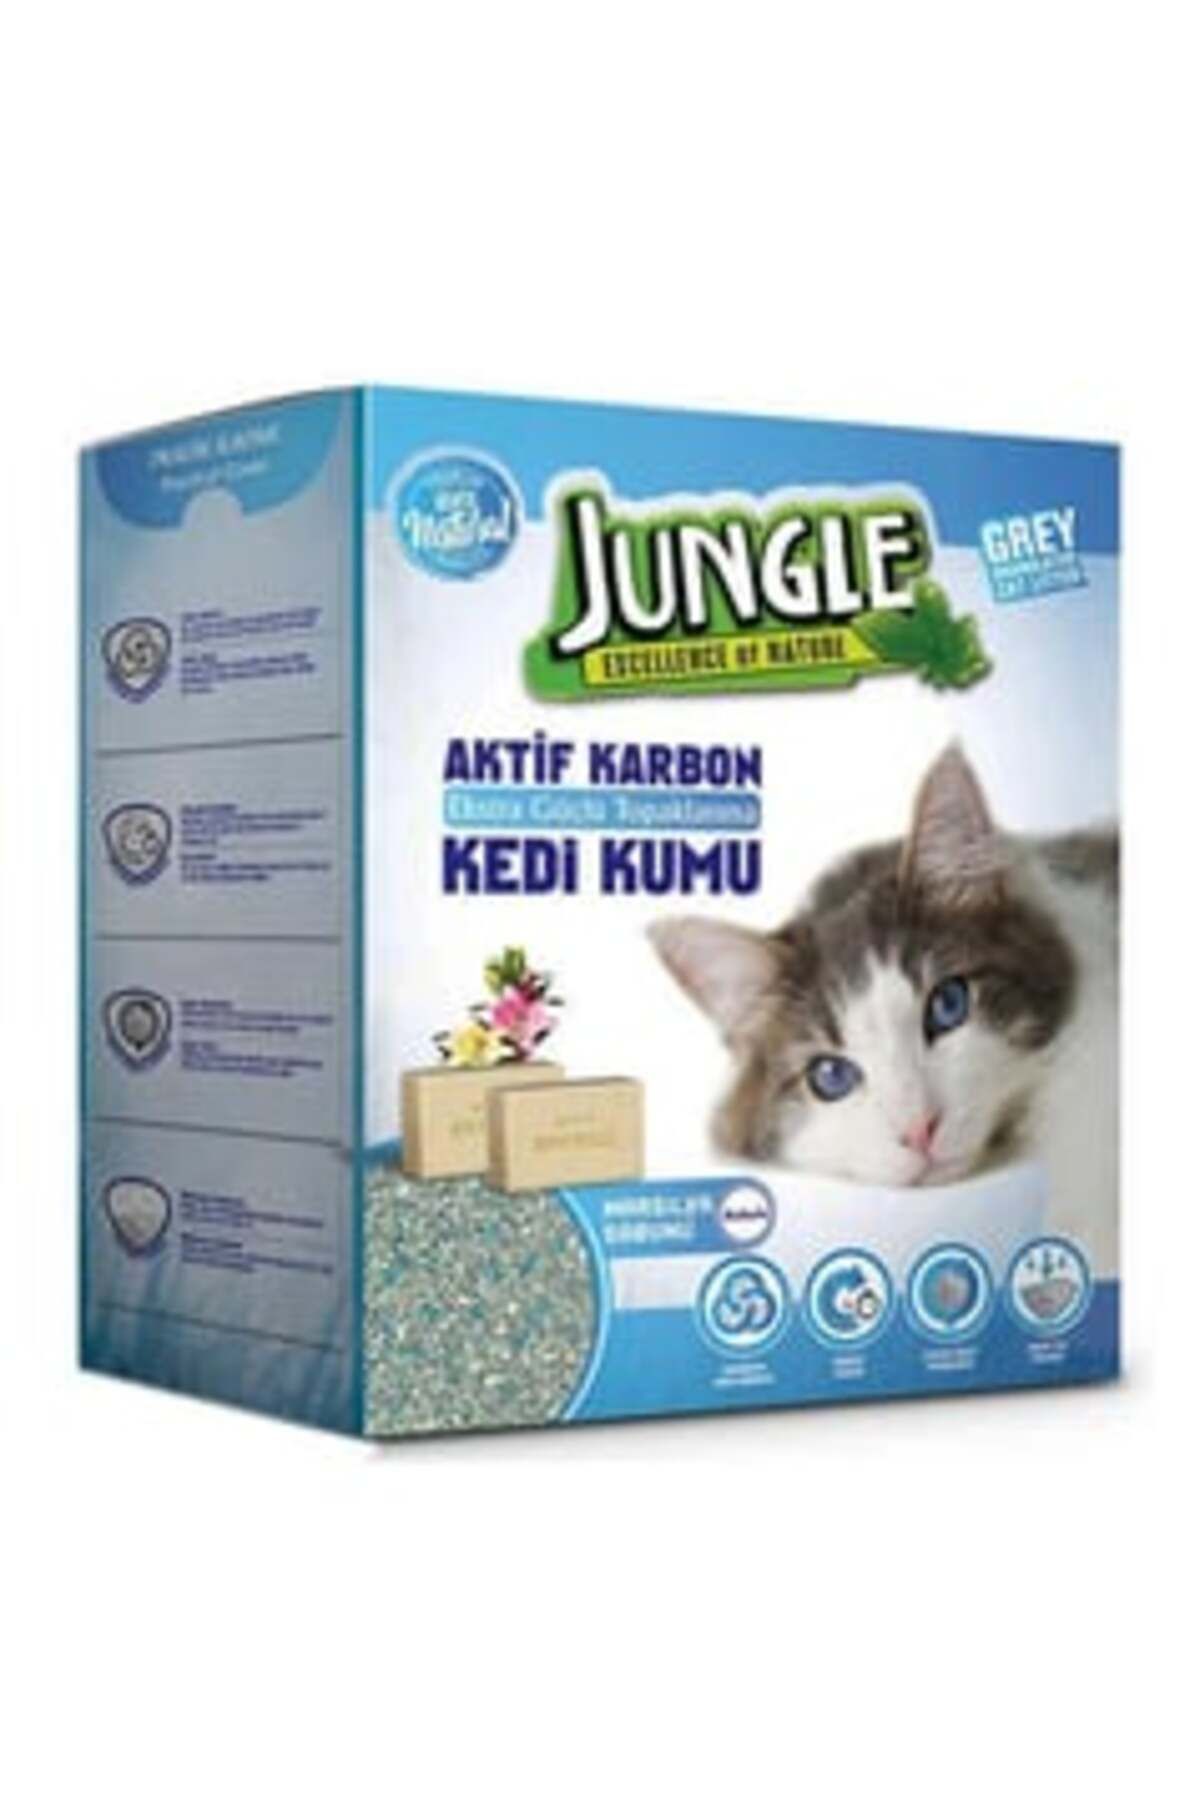 Jungle İnce Taneli Karbonlu ve Marsilya Sabunlu Topaklanan Kedi Kumu ( 1 ADET )